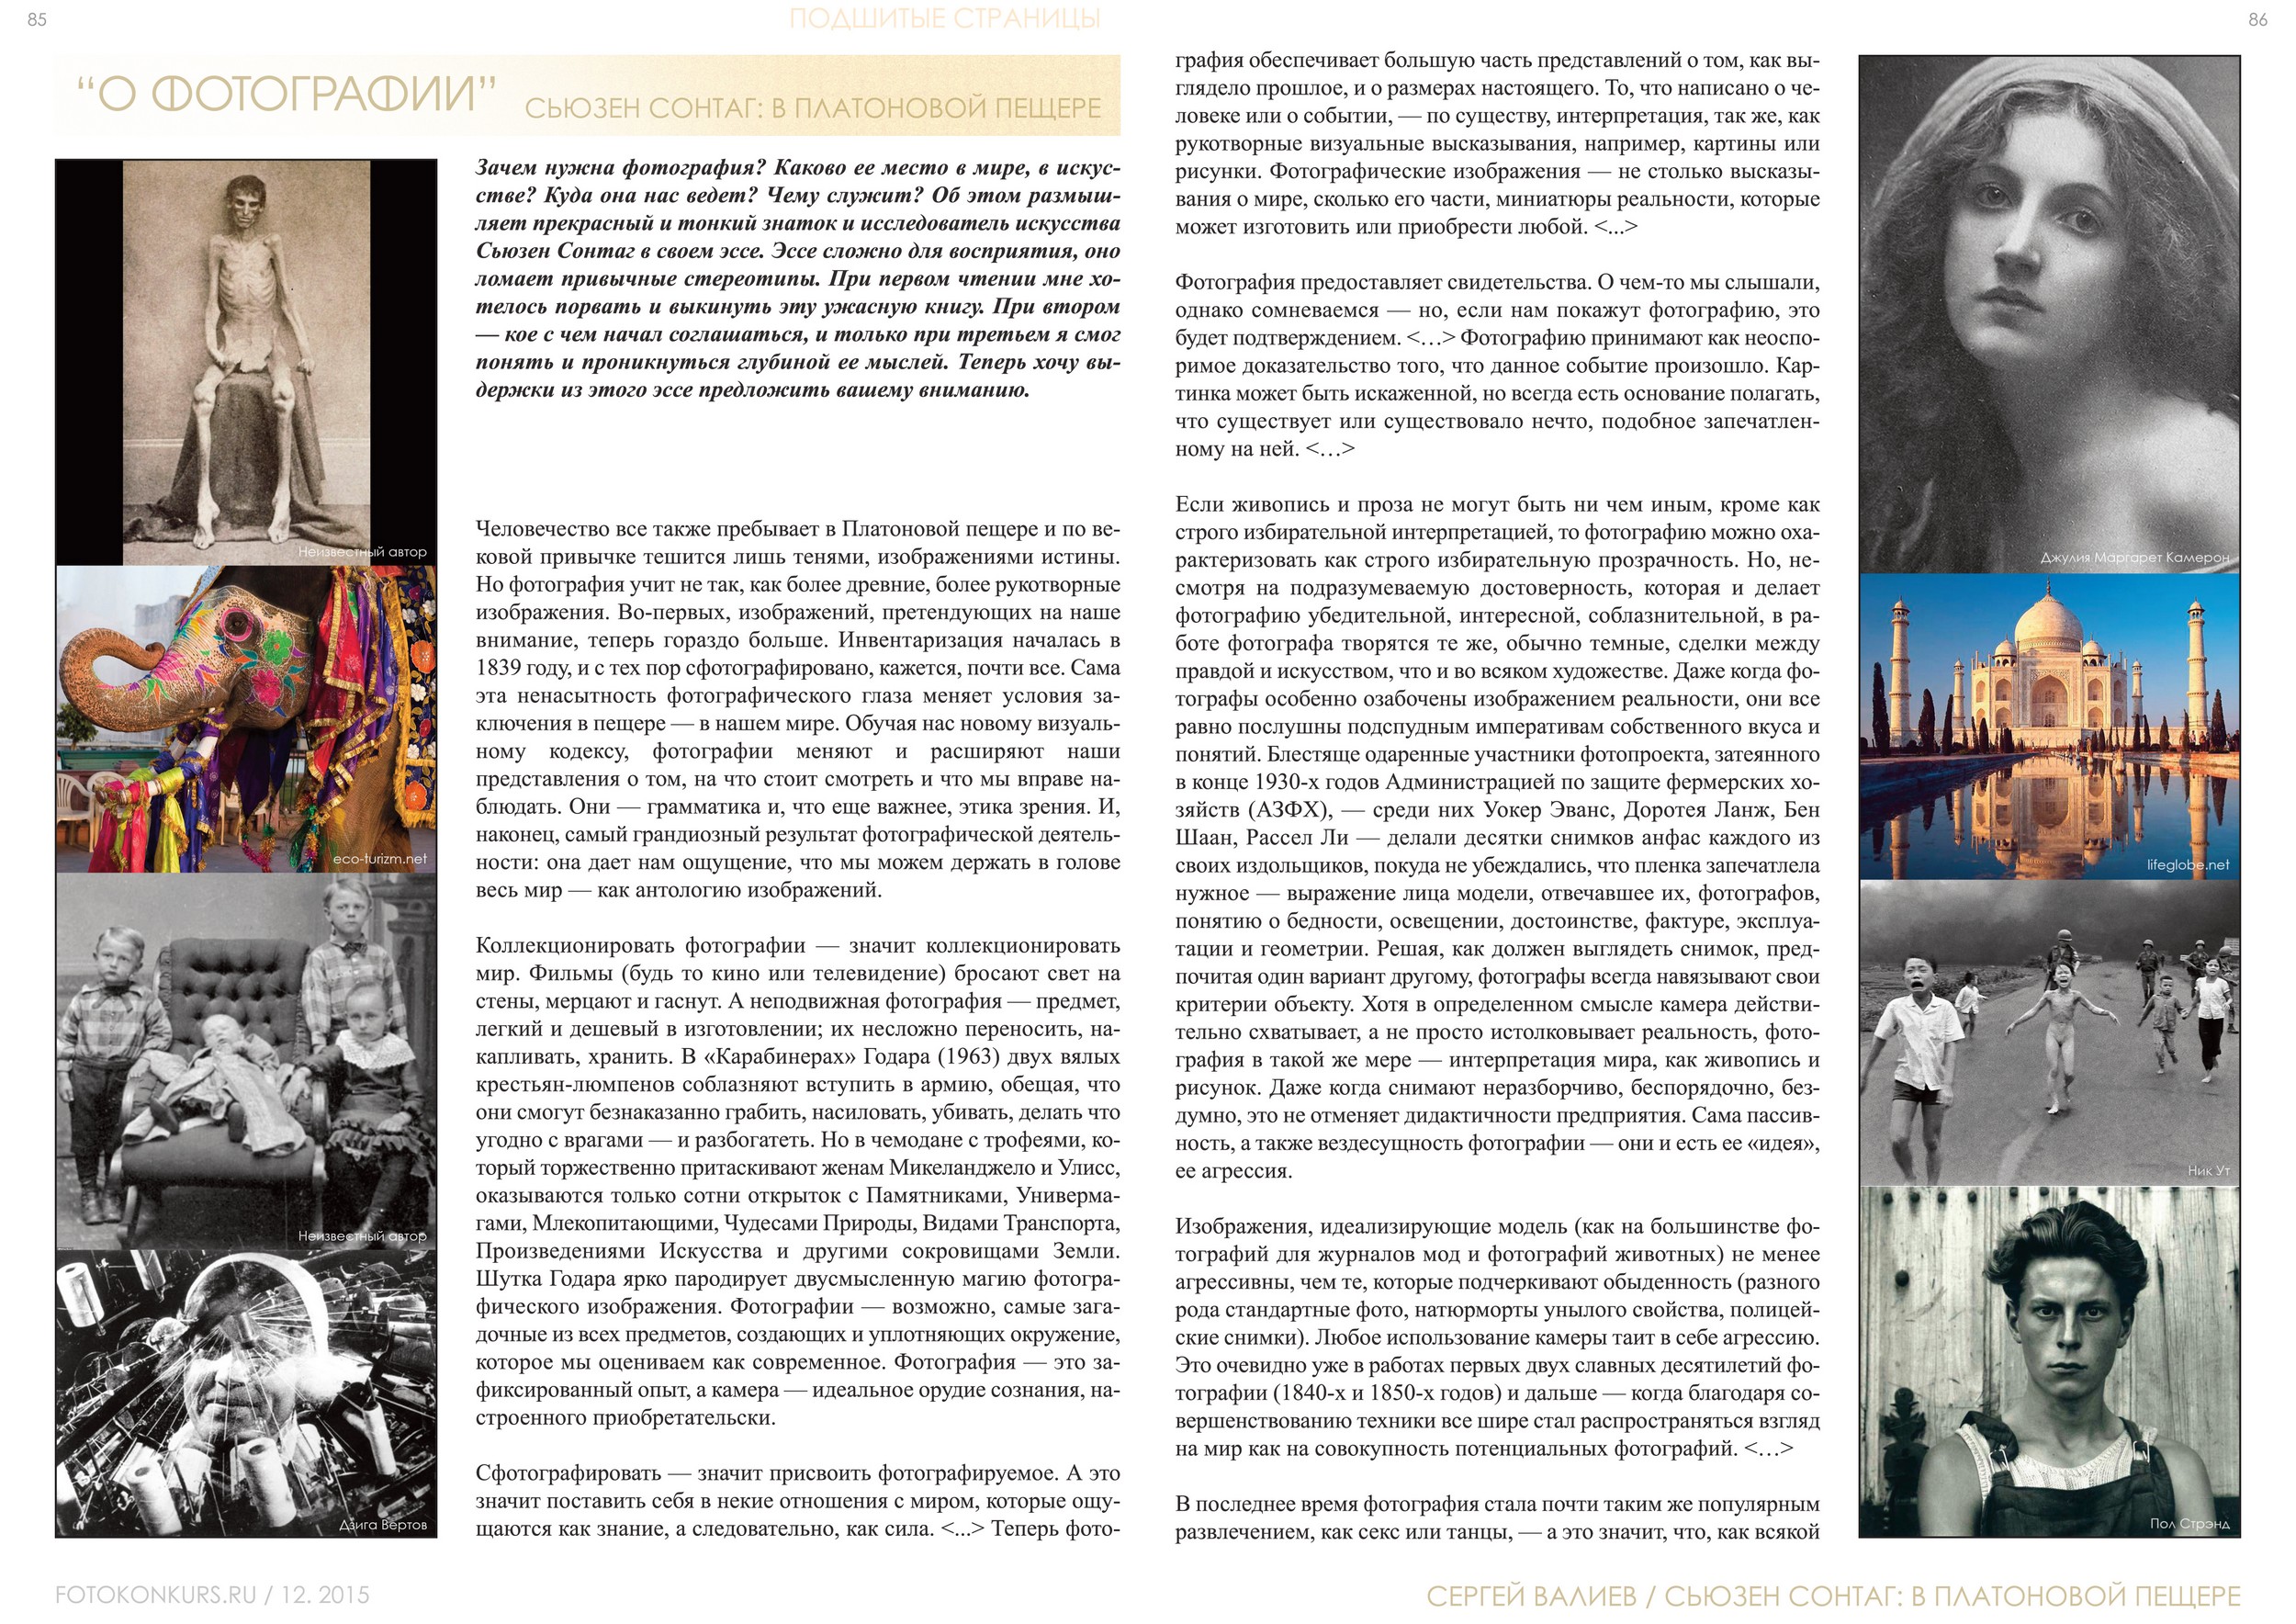 Журнал Фотоконкурс.ру, Выпуск 2, декабрь-2015, страница 85-86